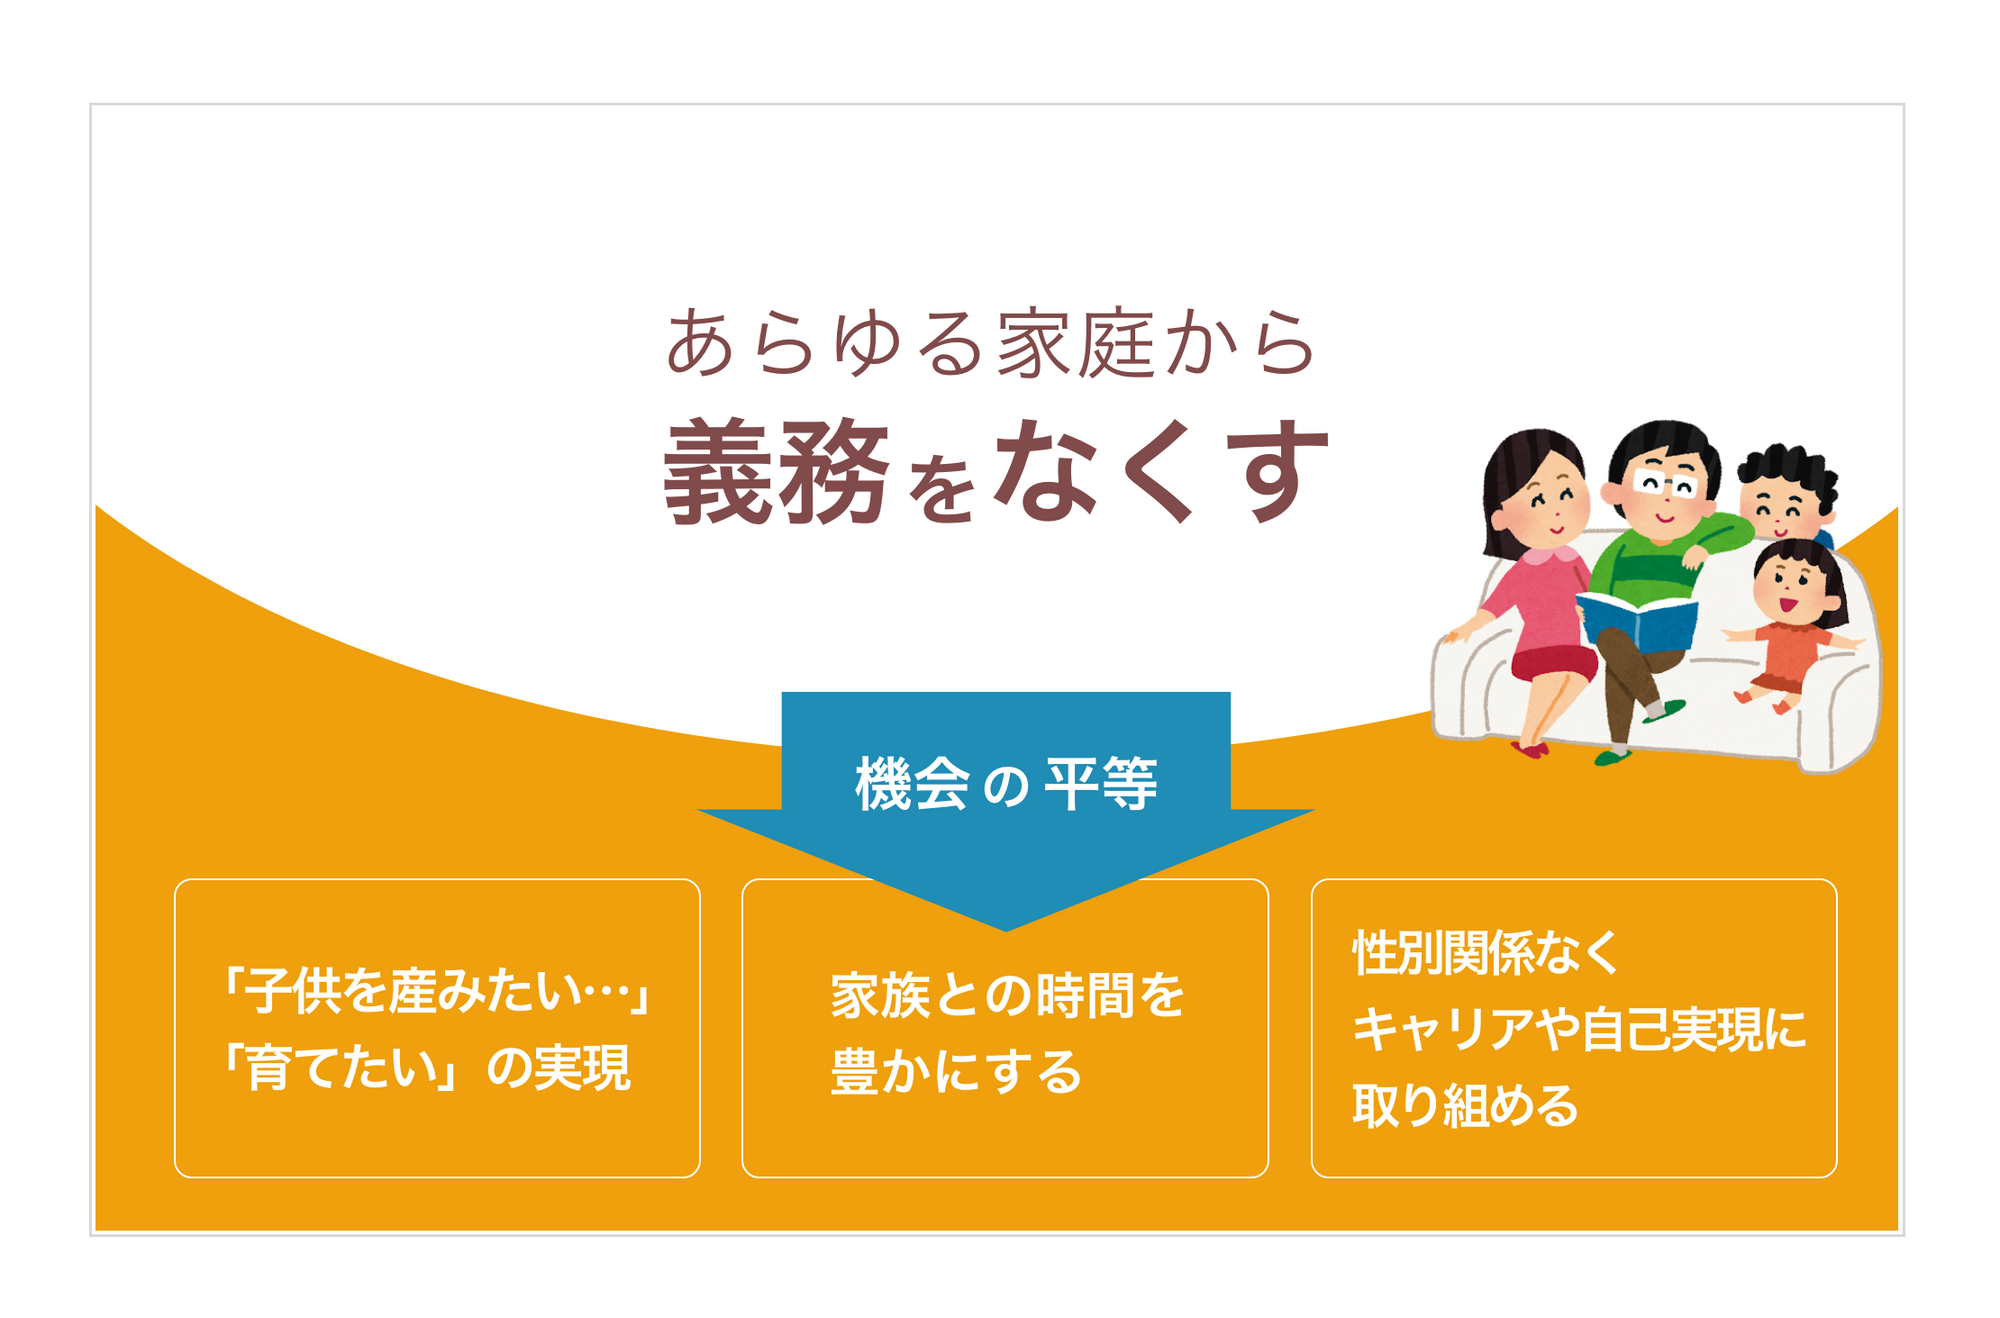 株式会社Antwayは、もっとも家事負担の重い「家庭料理」に着目し、共働き世帯向けの手作りお料理配達サービス「つくりおき.jp」を提供しています。